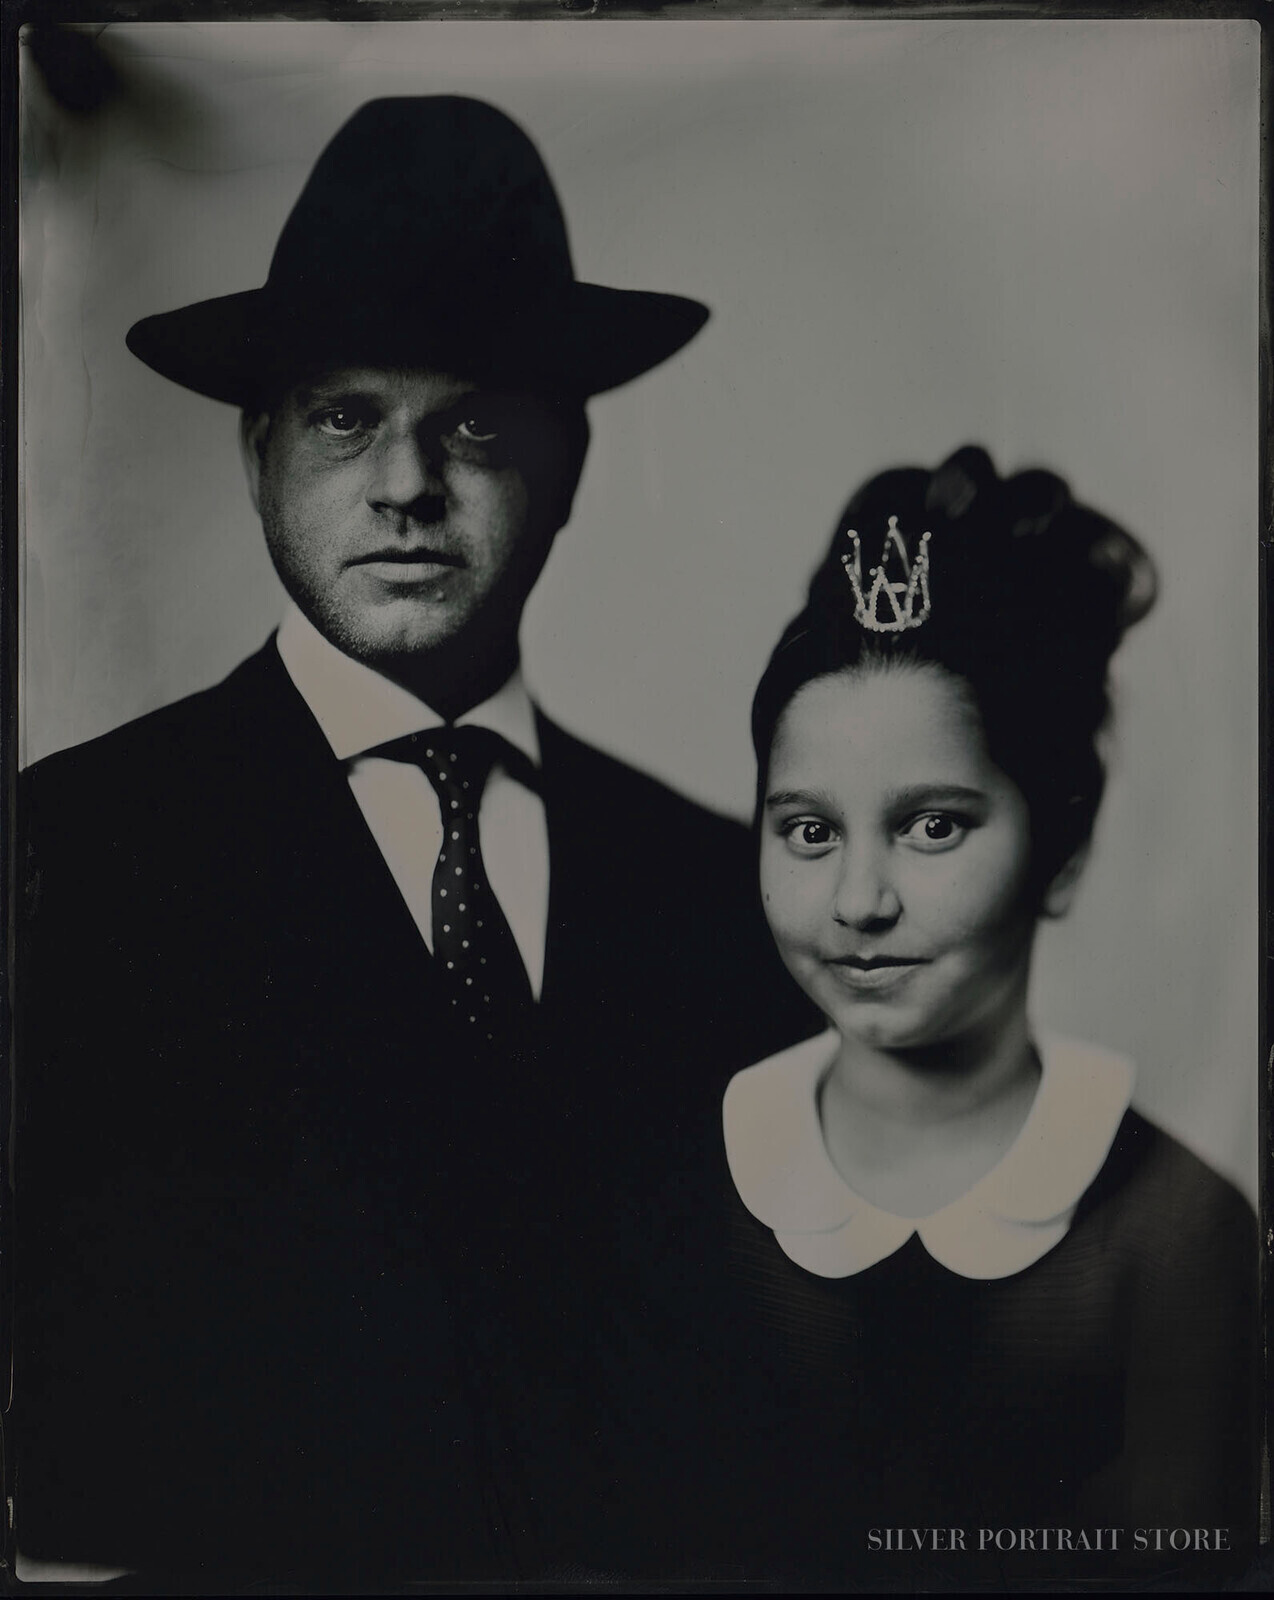 Elisha & Eden-Silver Portrait Store-Wet plate collodion-Tintype 20 x 25 cm.